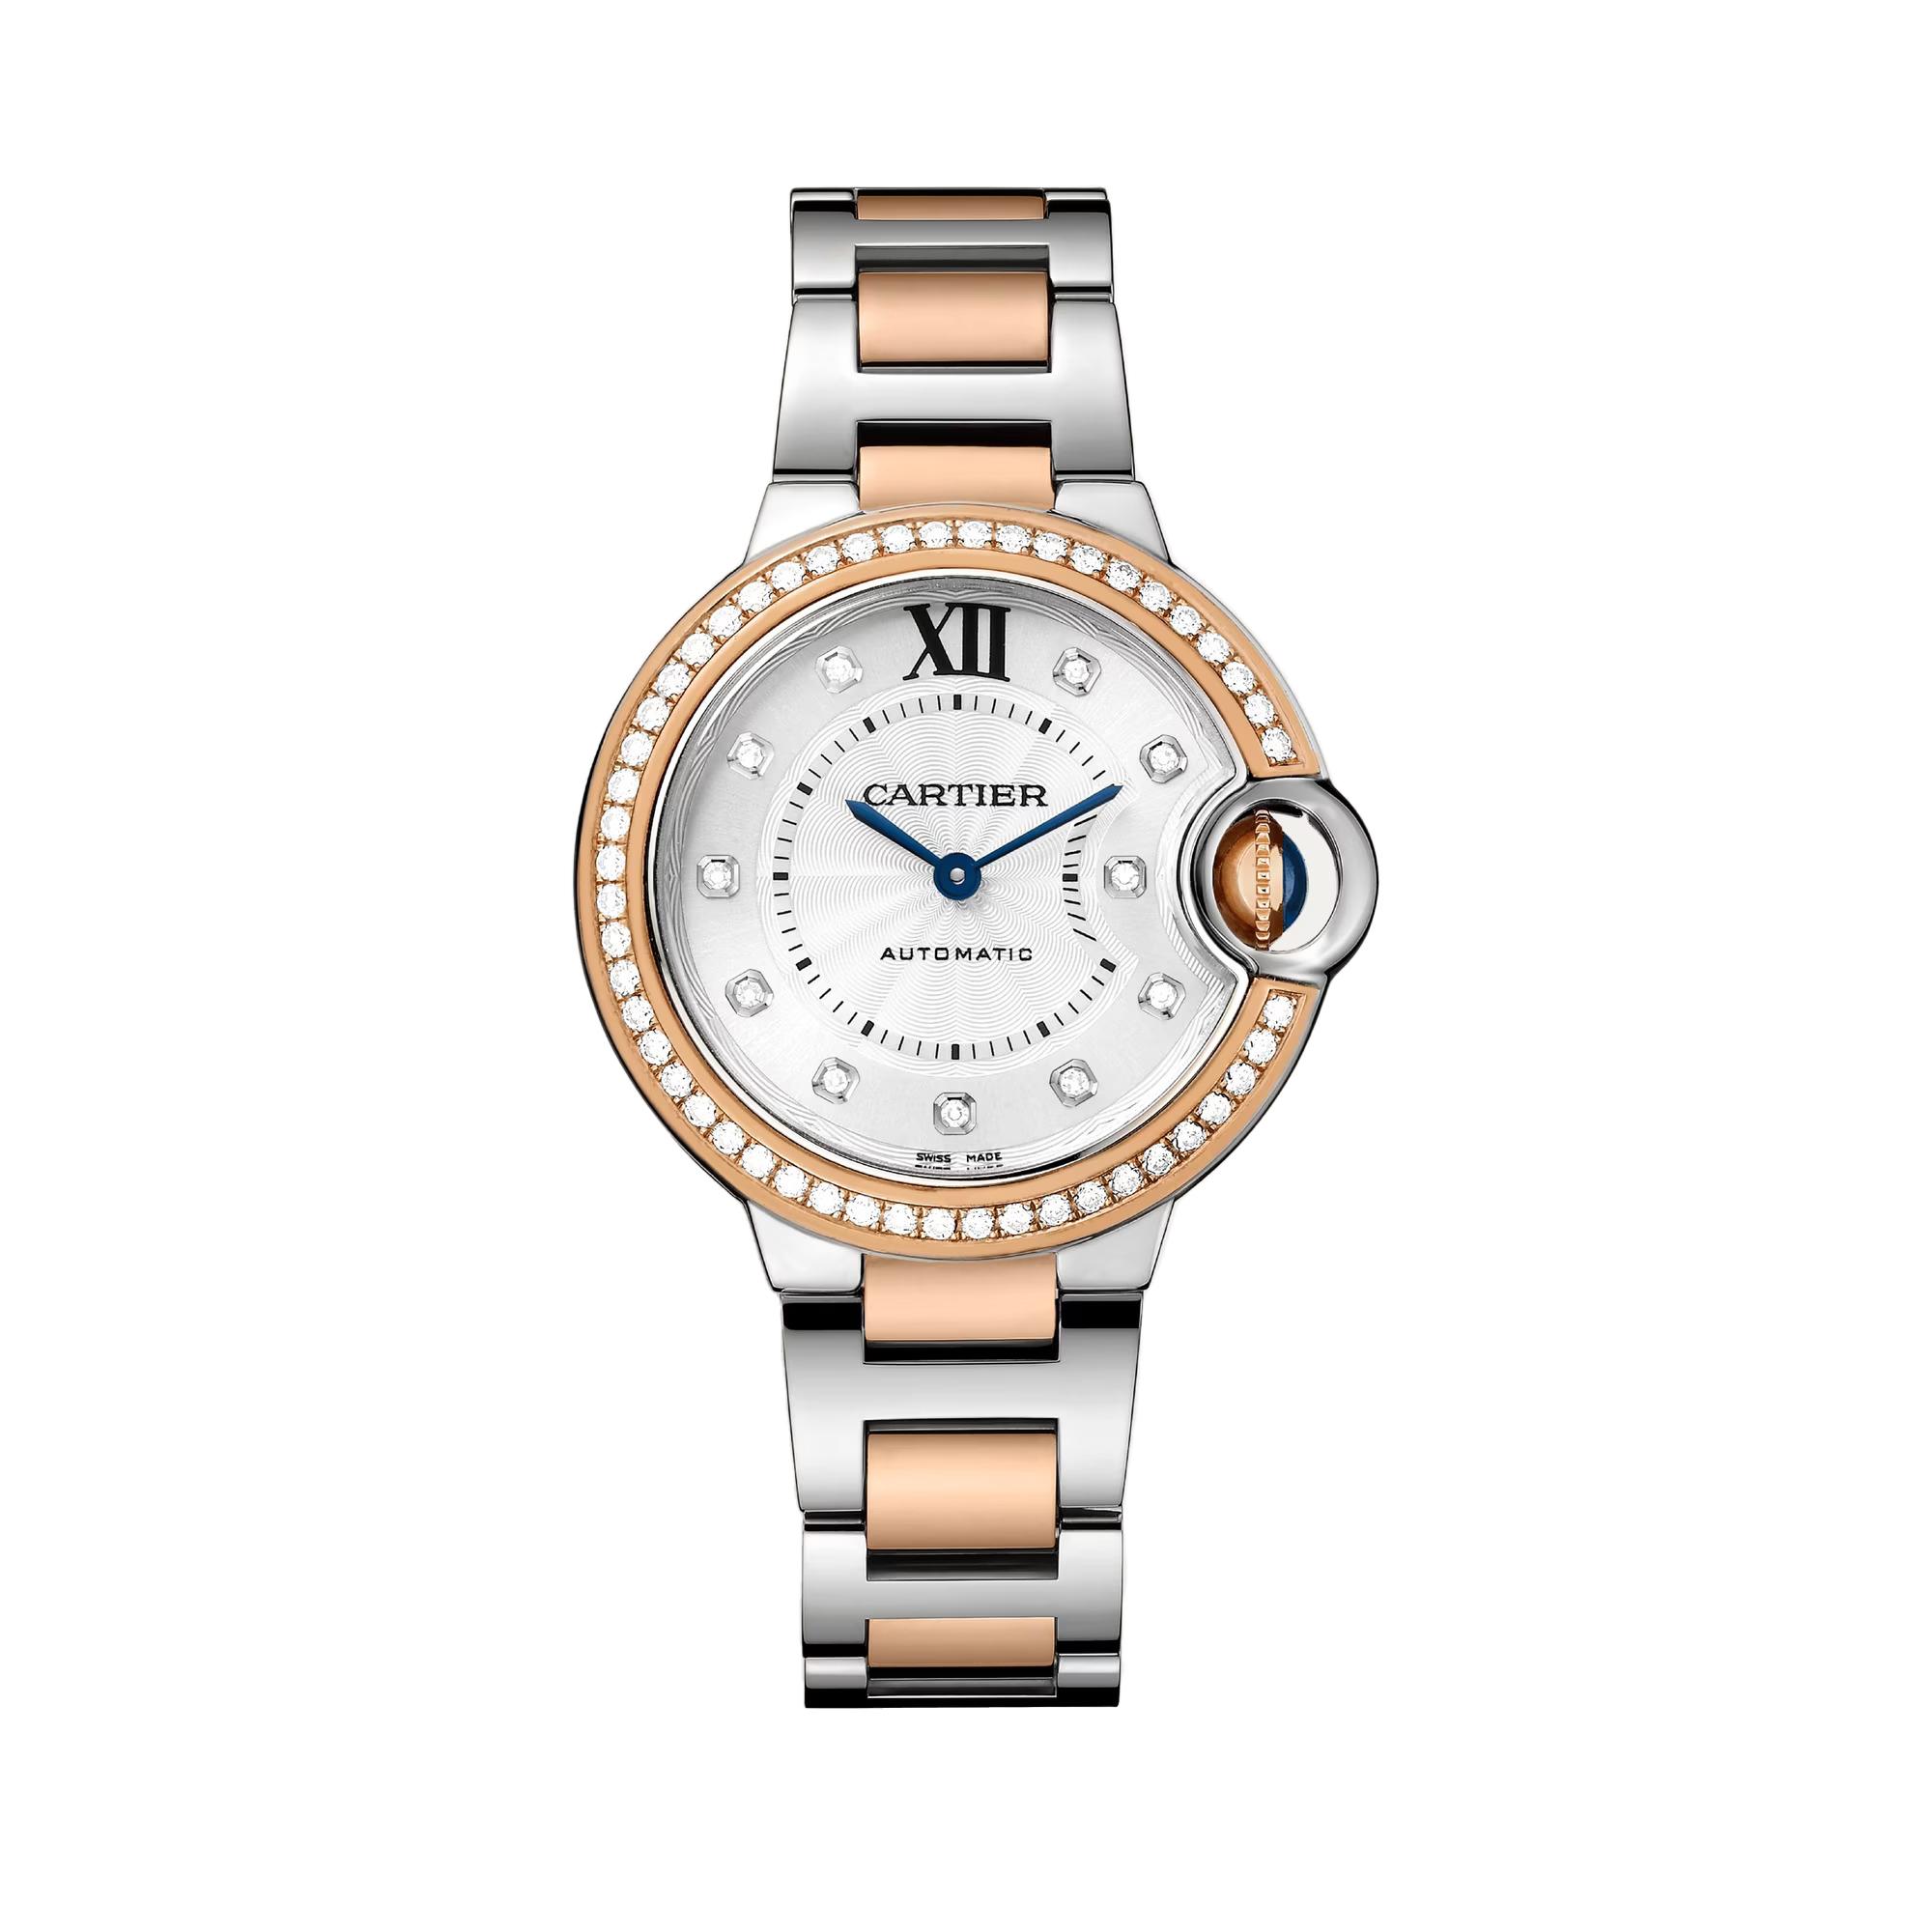 Ballon Bleu de Cartier Watch with Rose Gold and Diamonds, 33mm